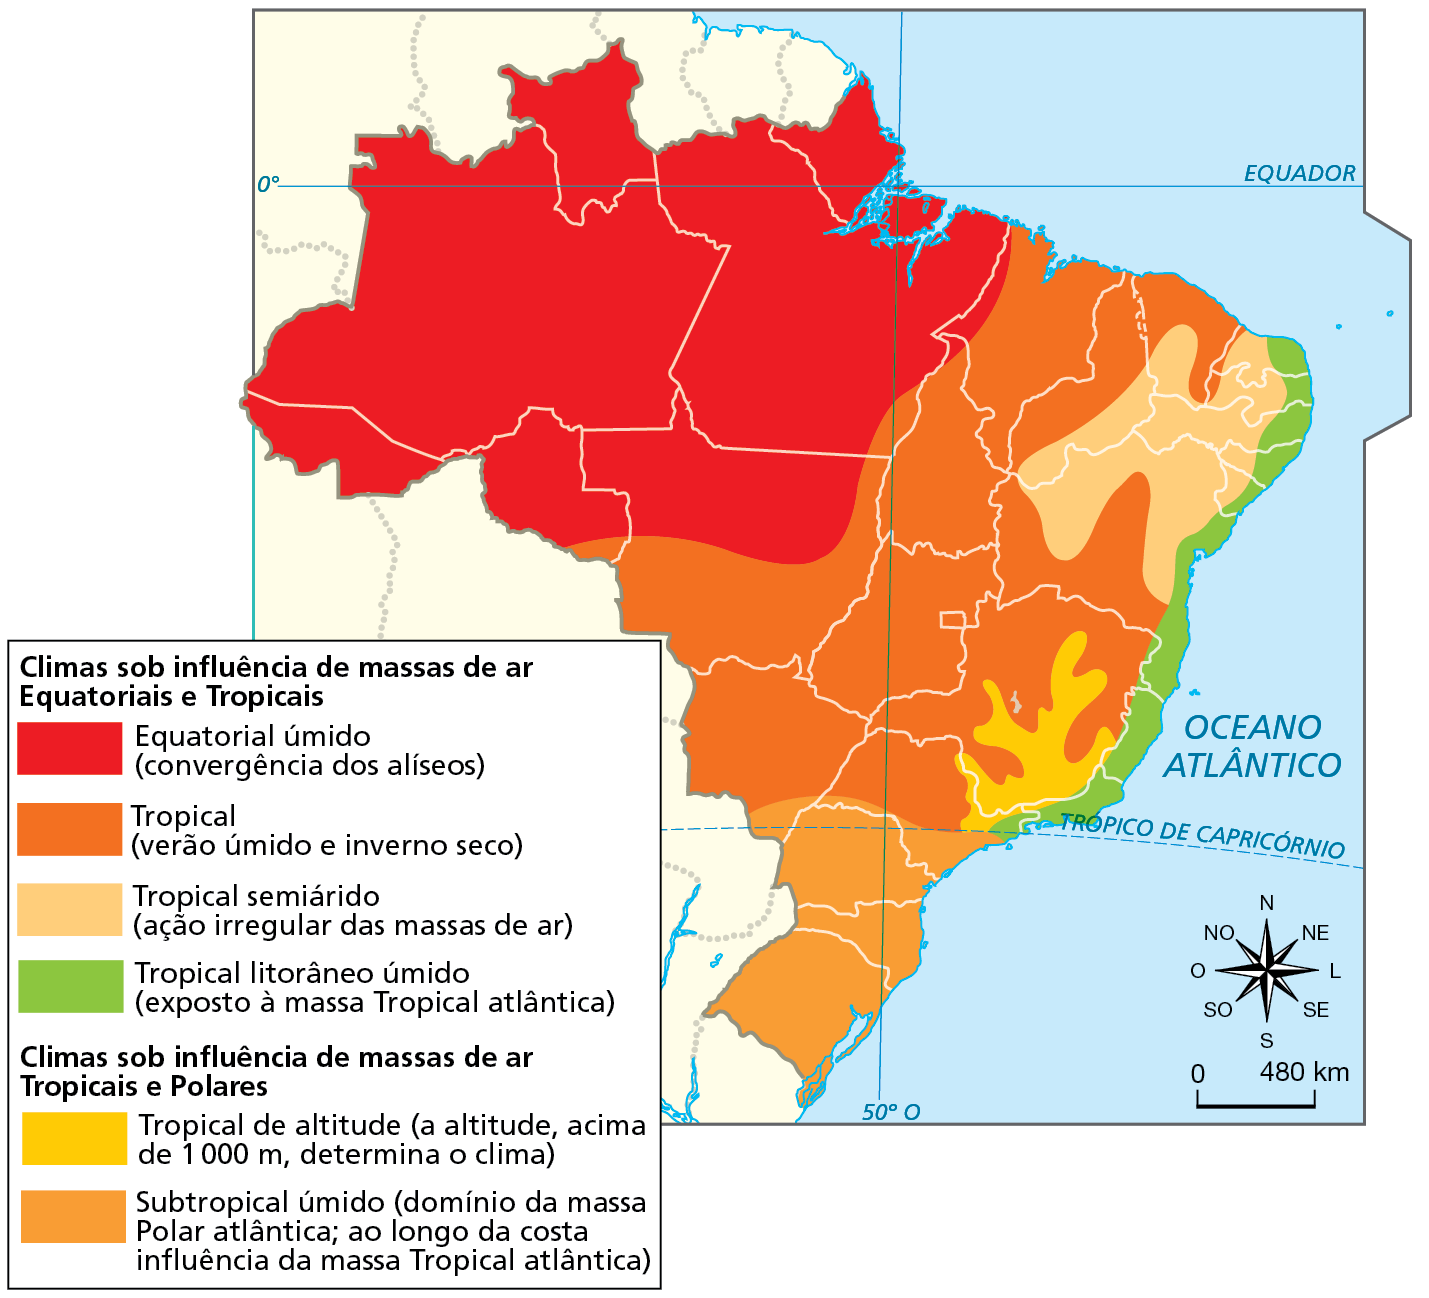 Mapa. Brasil: climas
Mapa do Brasil representando os climas do país.
Climas sob influência de massas de ar Equatoriais e Tropicais: Equatorial úmido (convergência dos alíseos): abrange o Acre, o Amazonas, Roraima, o Amapá, o extremo norte de Tocantins, o Pará (com exceção da porção sudeste), Rondônia (com exceção da porção sul), uma pequena faixa do oeste do Maranhão e o norte de Mato Grosso. Tropical (verão úmido e inverno seco): se estende por toda a região centro-oeste (com exceção do norte do Mato Grosso), por quase todo território de Tocantins e Maranhão, além de extensas porções do Ceará, do Piauí, da Bahia, de Minas Gerais e de São Paulo. Tropical semiárido (ação irregular das massas de ar): interior de estados da região nordeste, com exceção do Maranhão. Tropical litorâneo úmido (exposto à massa Tropical atlântica): faixa litorânea que se estende do norte de São Paulo ao norte do Rio Grande do Norte. 
Climas sob influência de massas de ar Tropicais e Polares: Tropical de altitude (a altitude acima de 1.000 metros, determina o clima): mancha que se estende pela divisa de São Paulo, Minas Gerais e Rio de Janeiro, com maior ocorrência em Minas Gerais. Subtropical úmido (domínio da massa Polar atlântica; ao longo da costa influência da massa Tropical atlântica): clima que se estende por toda a Região Sul e pela porção sul dos estados de São Paulo e Mato Grosso do Sul. 
Na parte inferior, rosa dos ventos e escala de 0 a 480 quilômetros.